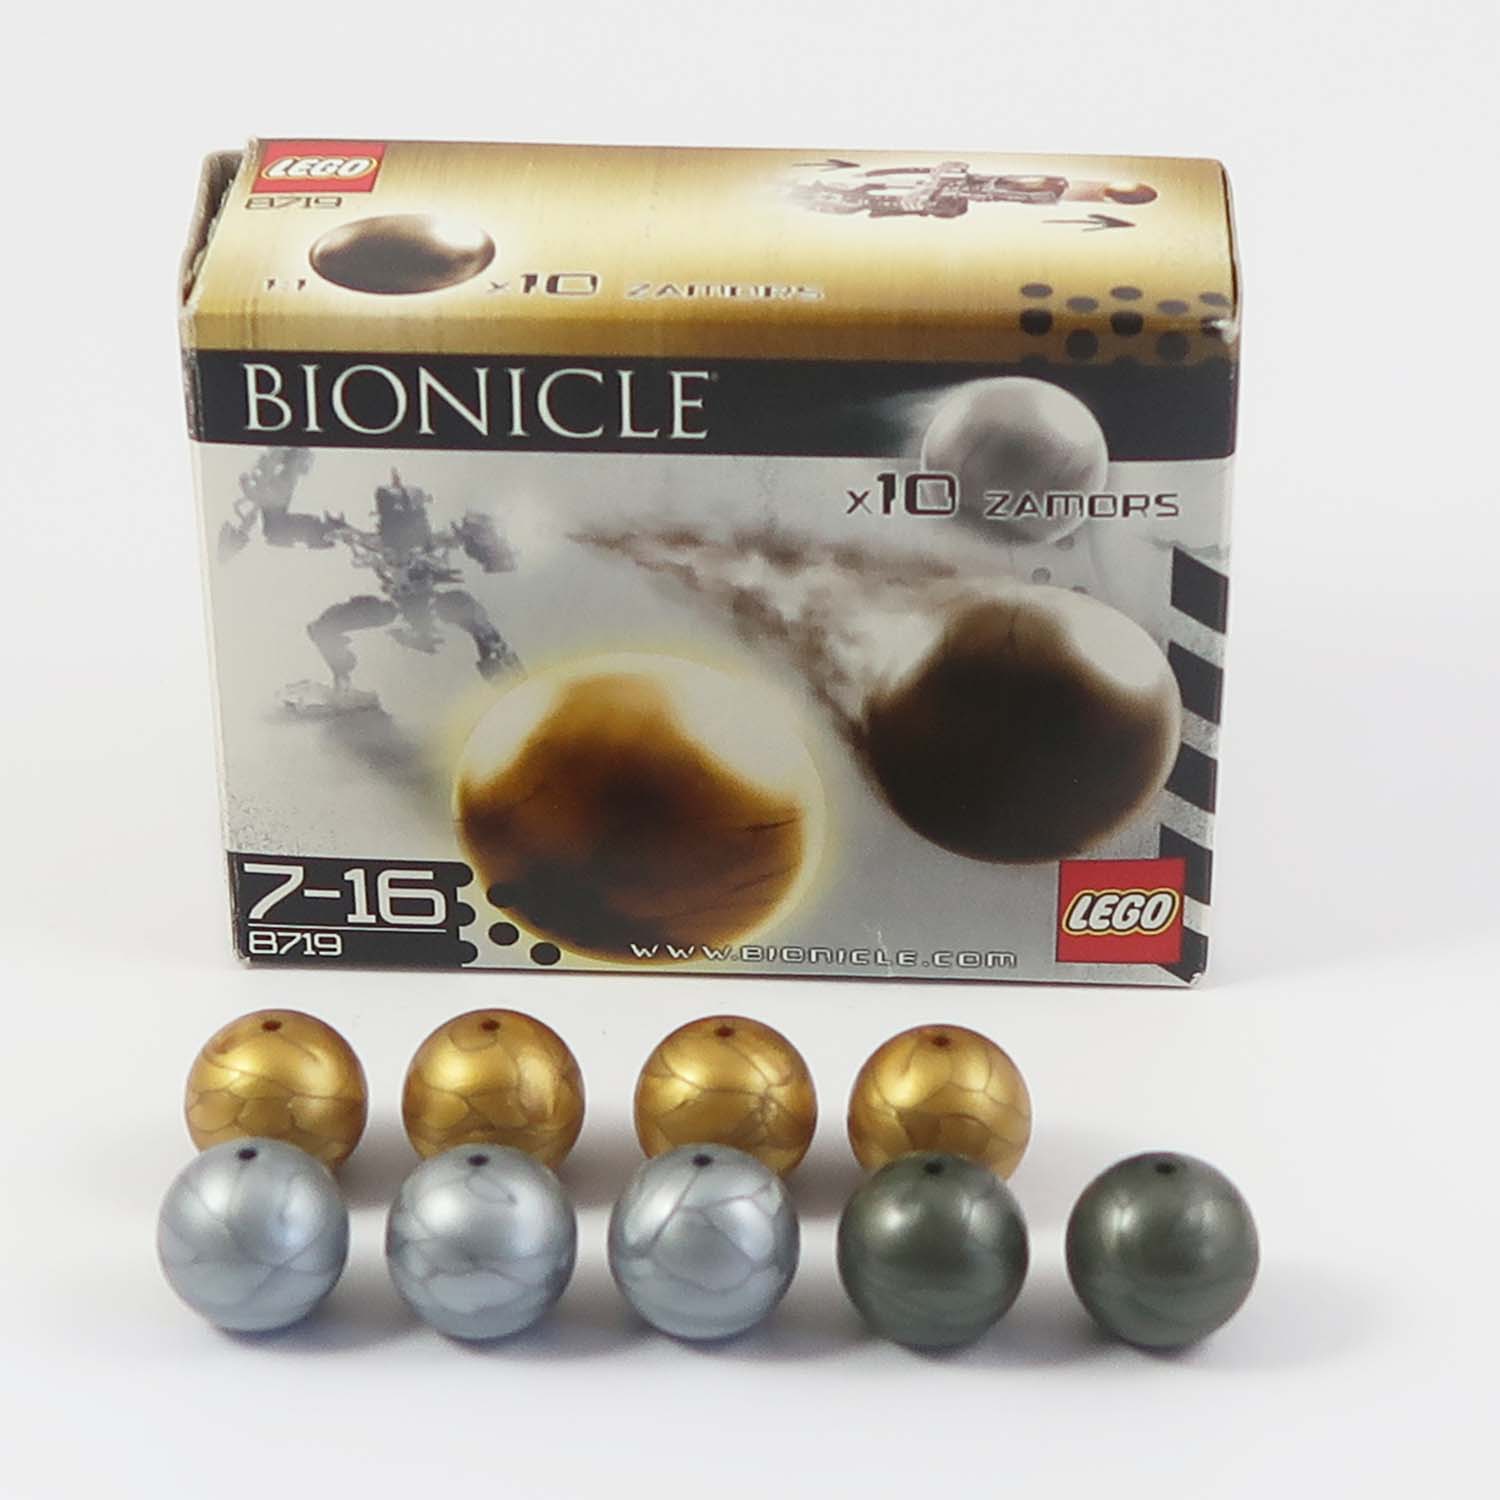 LEGO Bionicle - Zamors (8719)